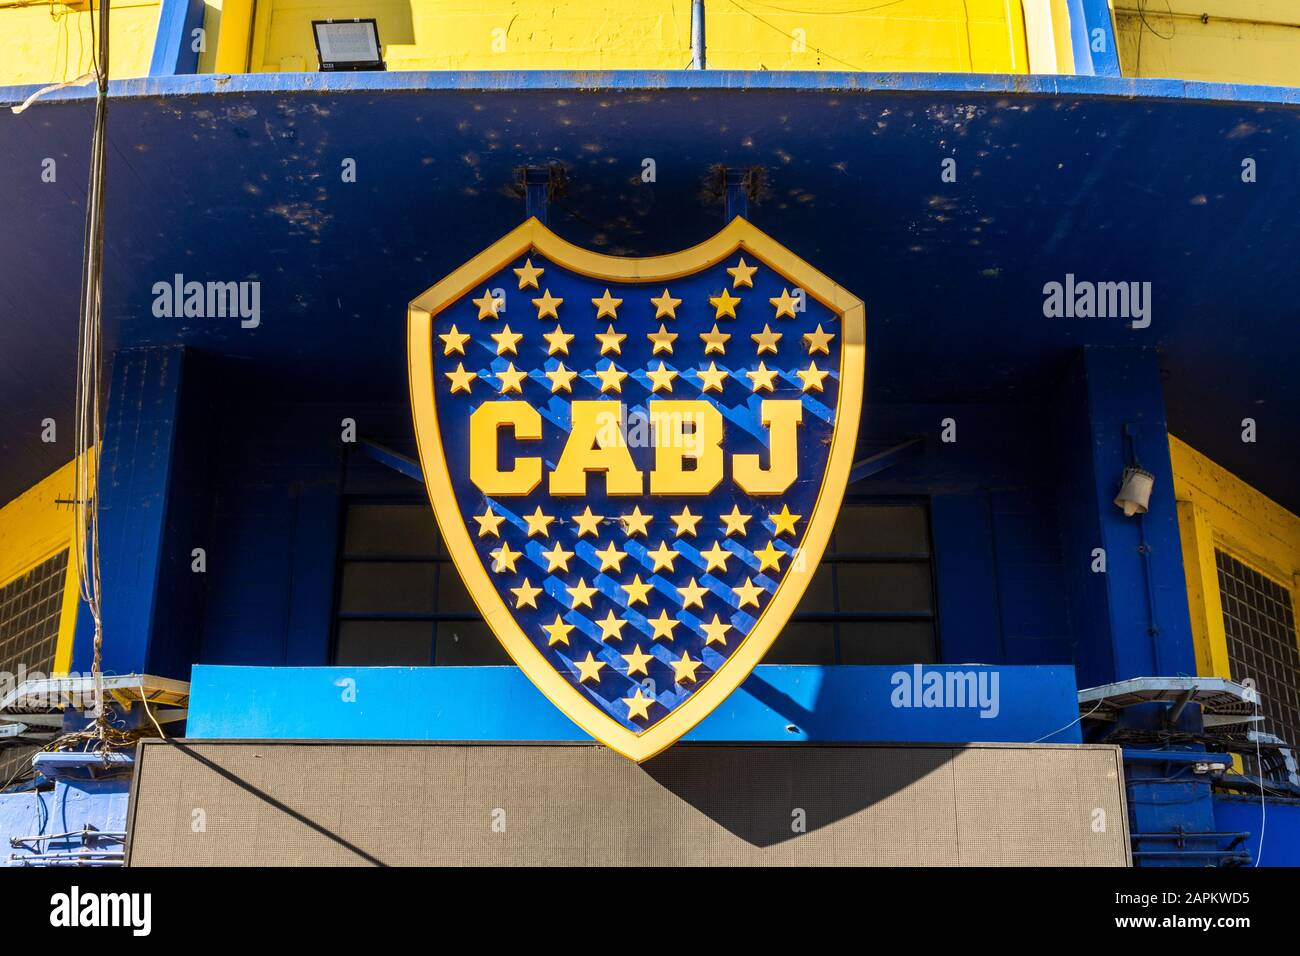 Exterior of La Bombonera soccer stadium (Boca Juniors) in La Boca area, Buenos Aires, Argentina Stock Photo